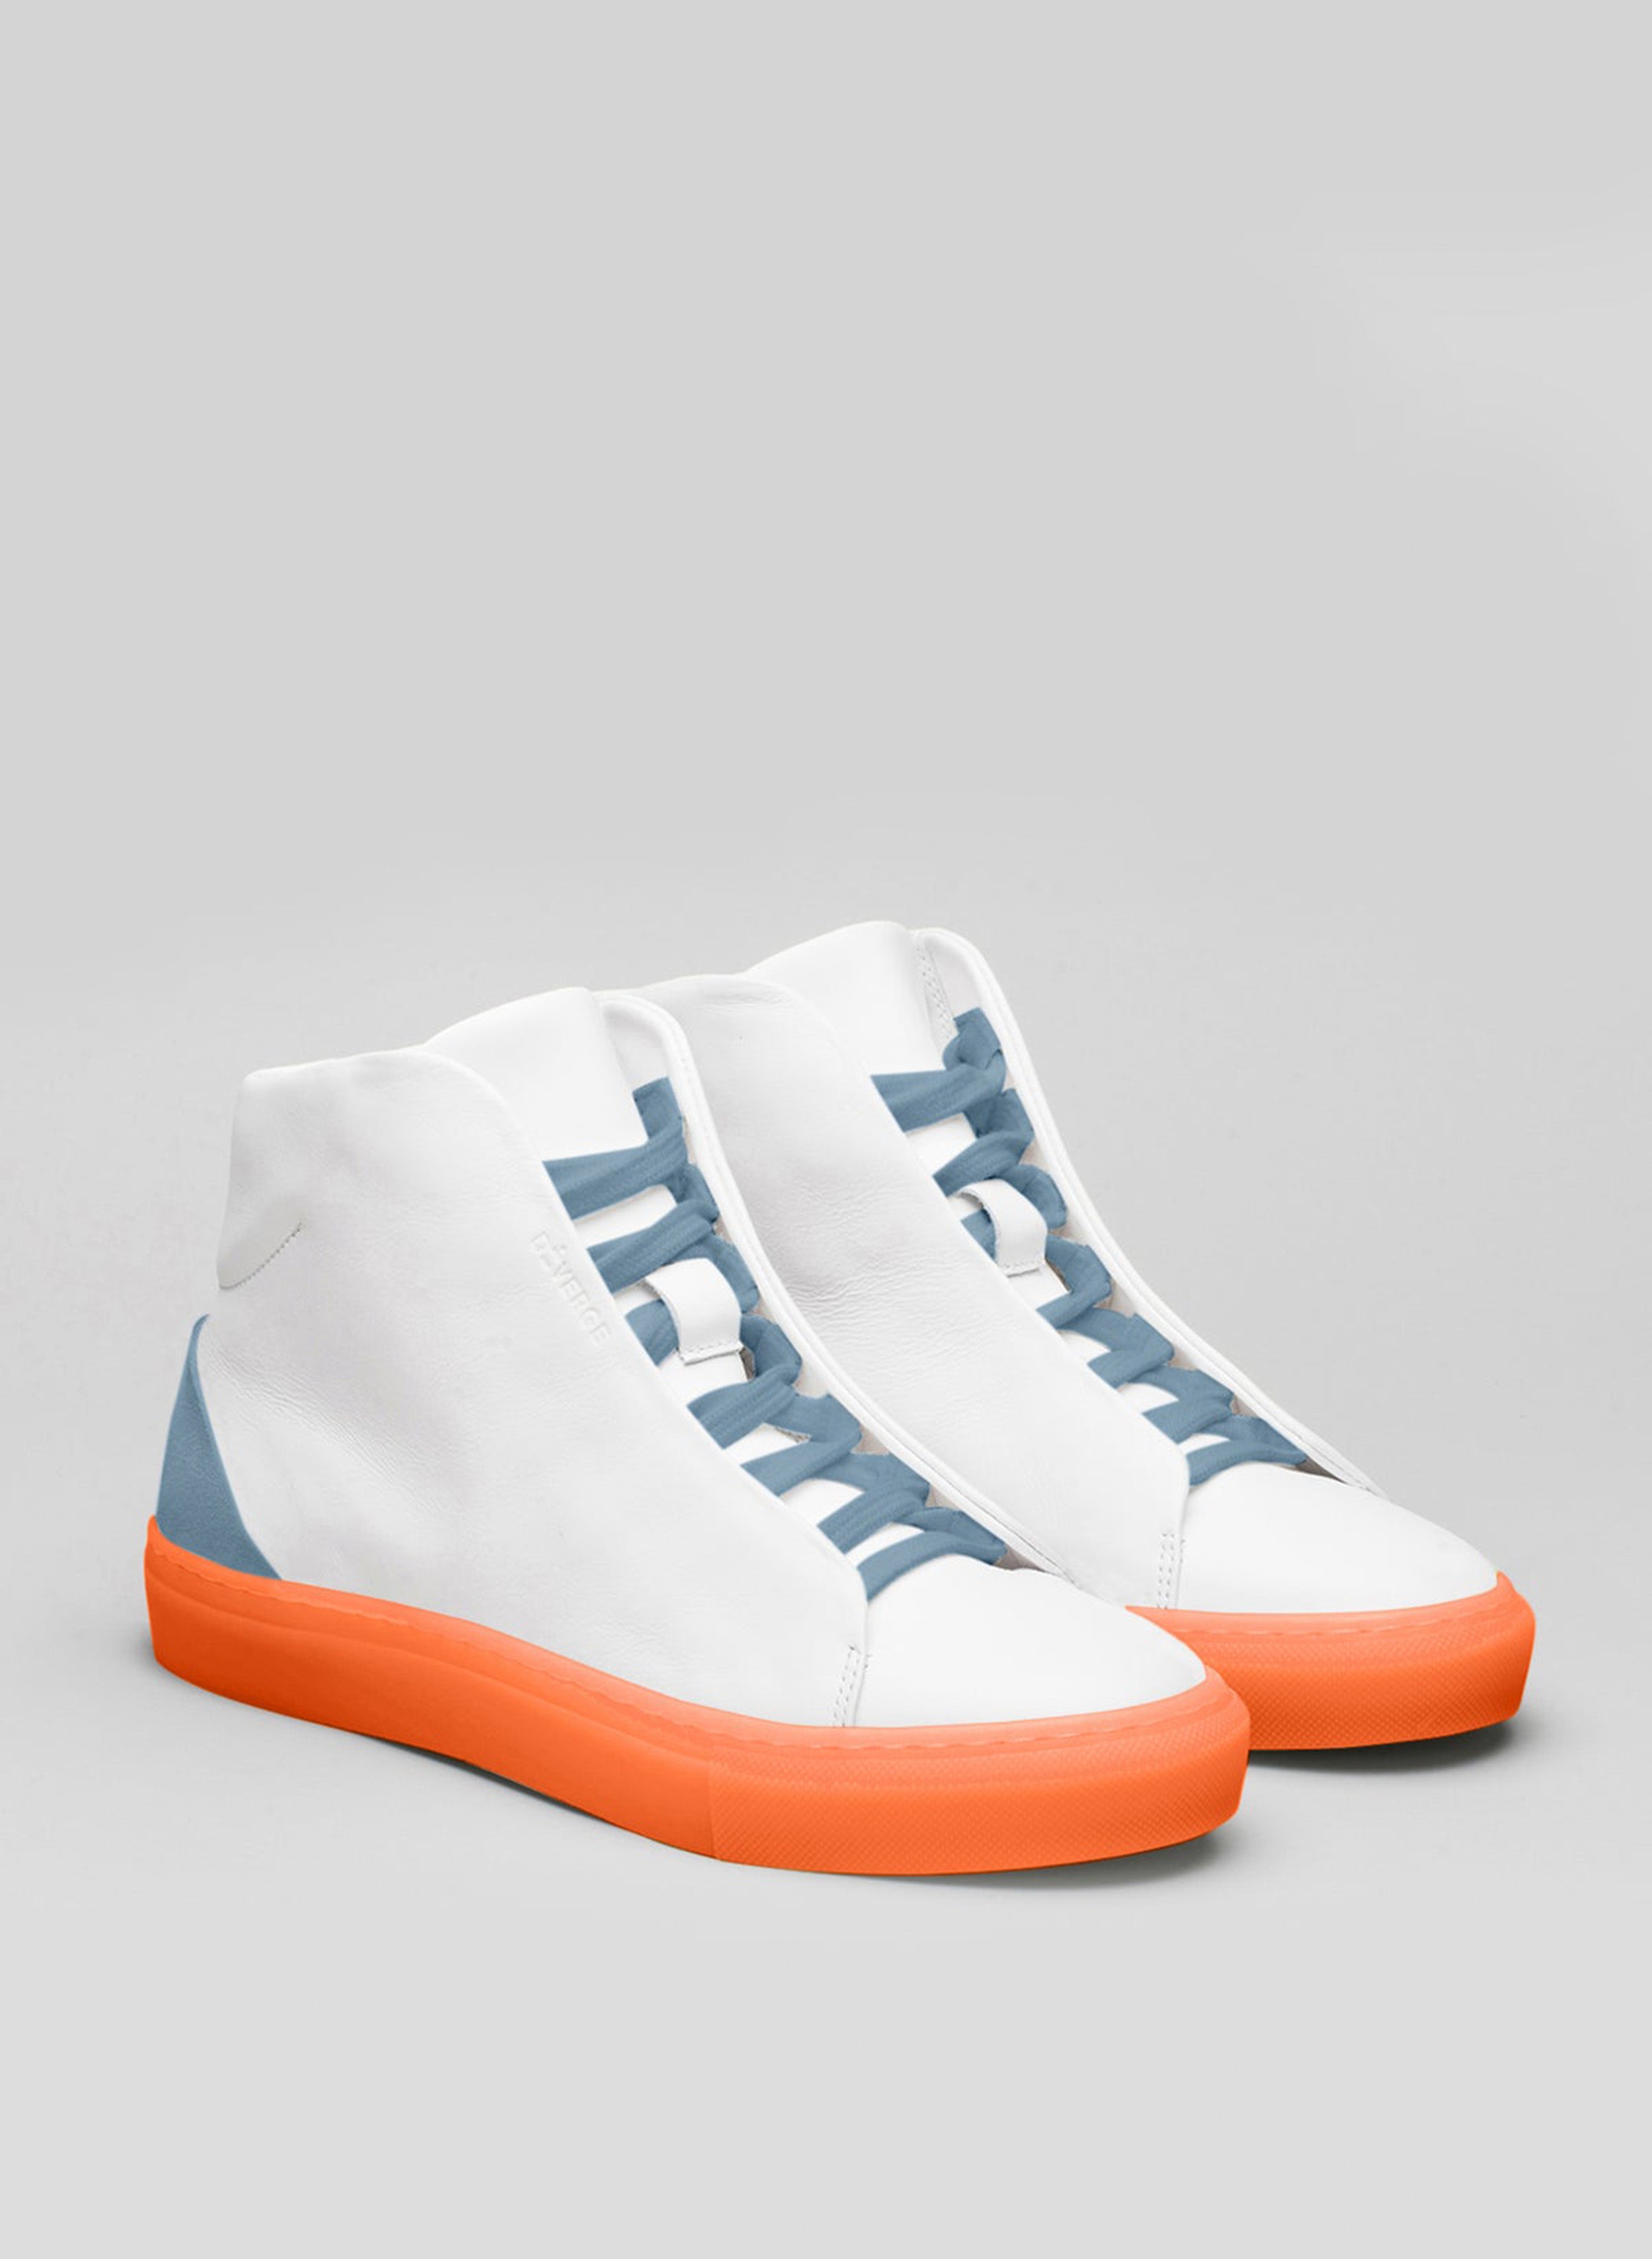 Un paio di scarpe alte bianche sneakers con lacci blu e suola arancione, in mostra le scarpe personalizzate di Diverge.